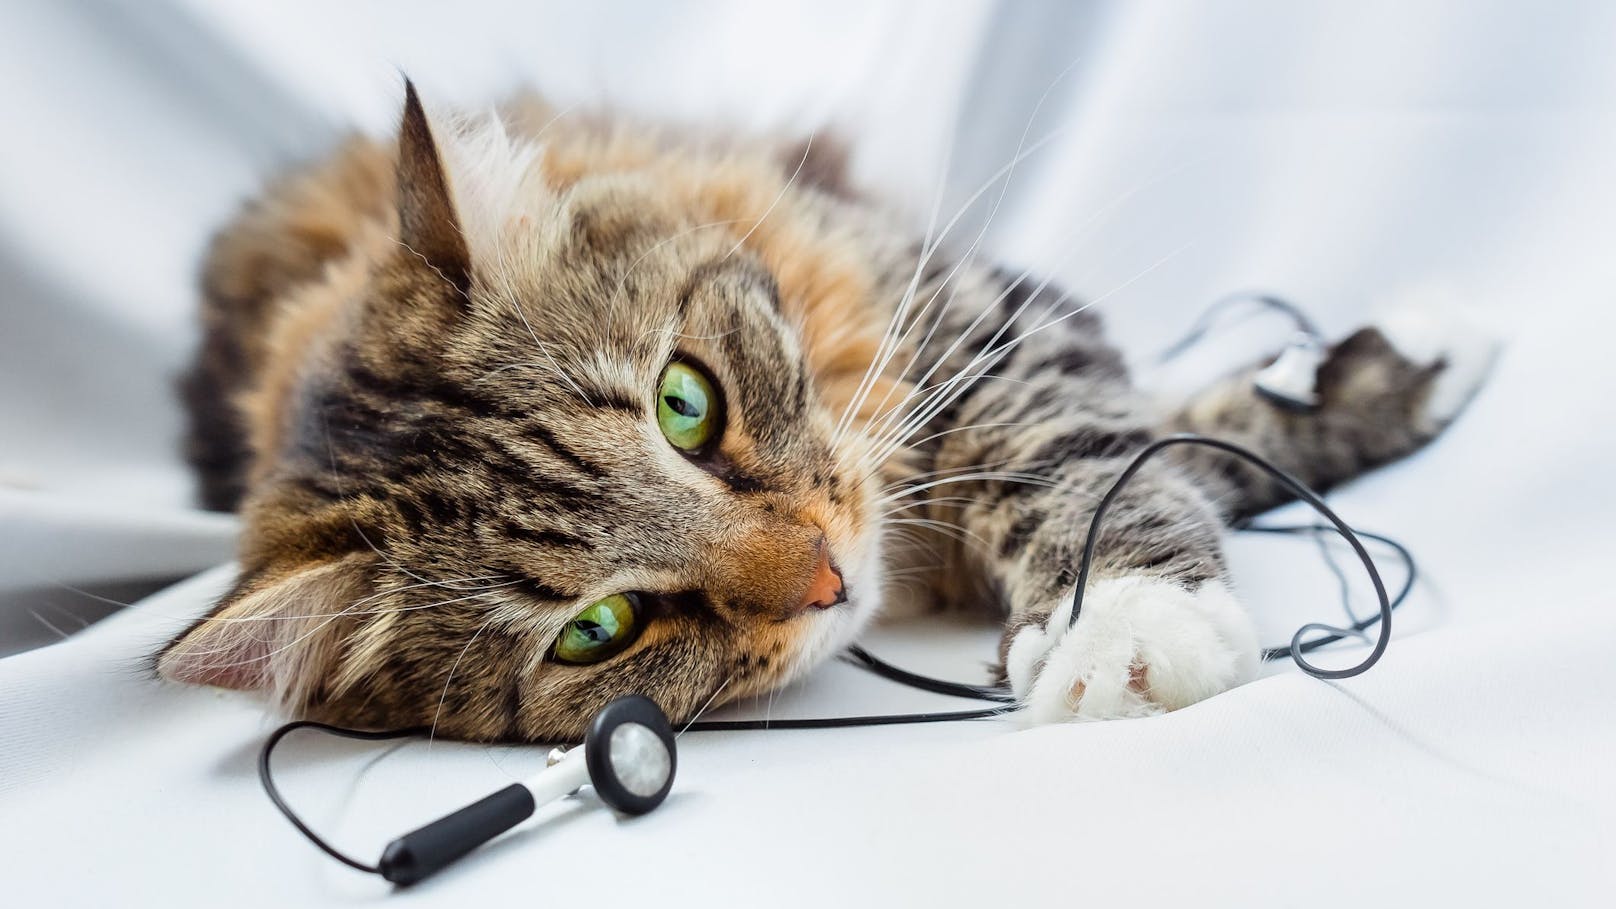 Artgerechte, musikalische Kompositionen für Katzen? Forscher sagen: "Ja, es wirkt!" <br>